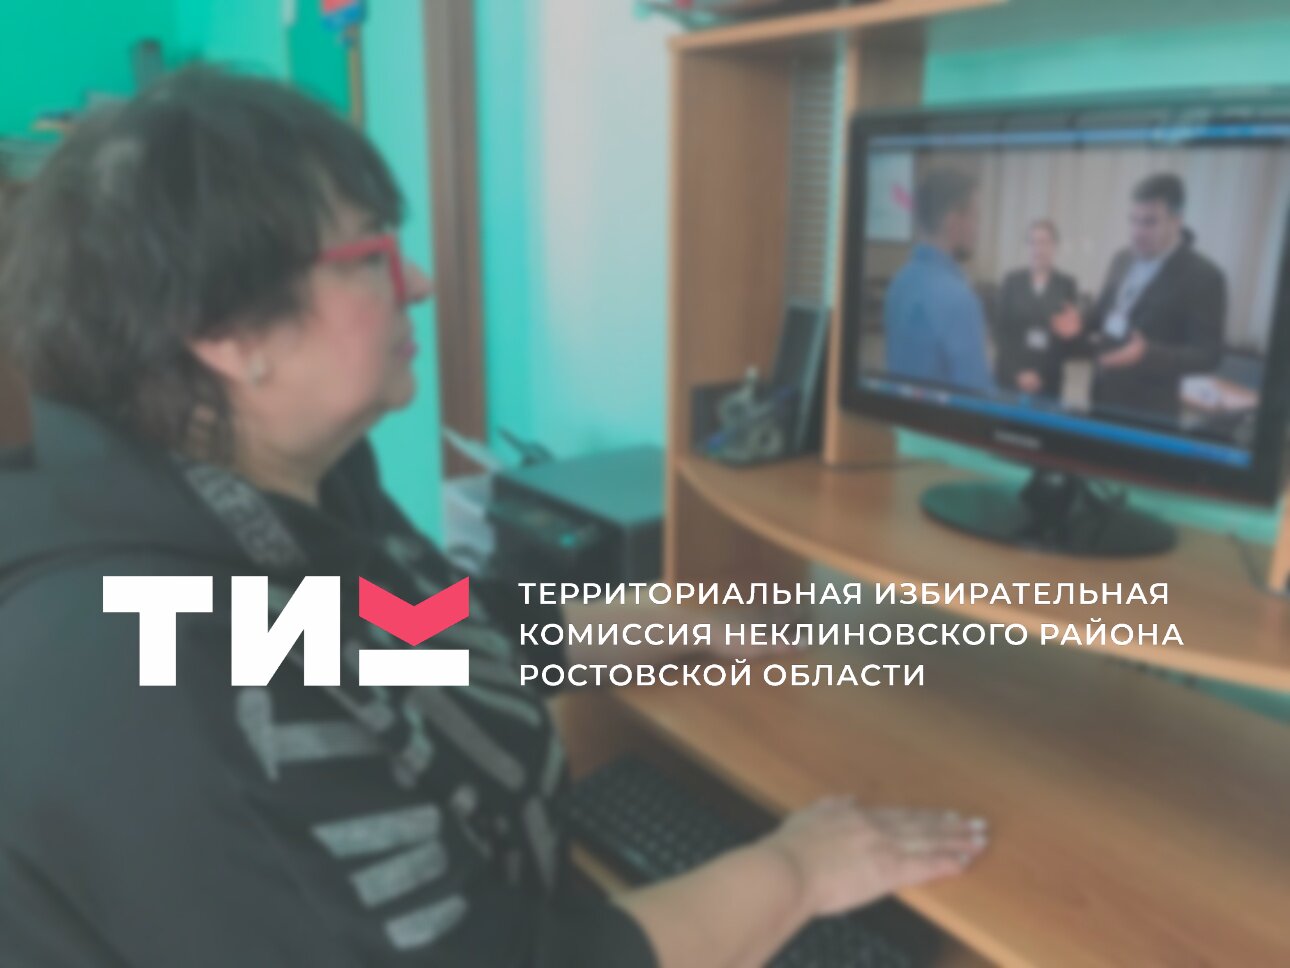 Практика использования видеоматериалов в дистанционном образовании членов участковых избирательных комиссий Неклиновского района